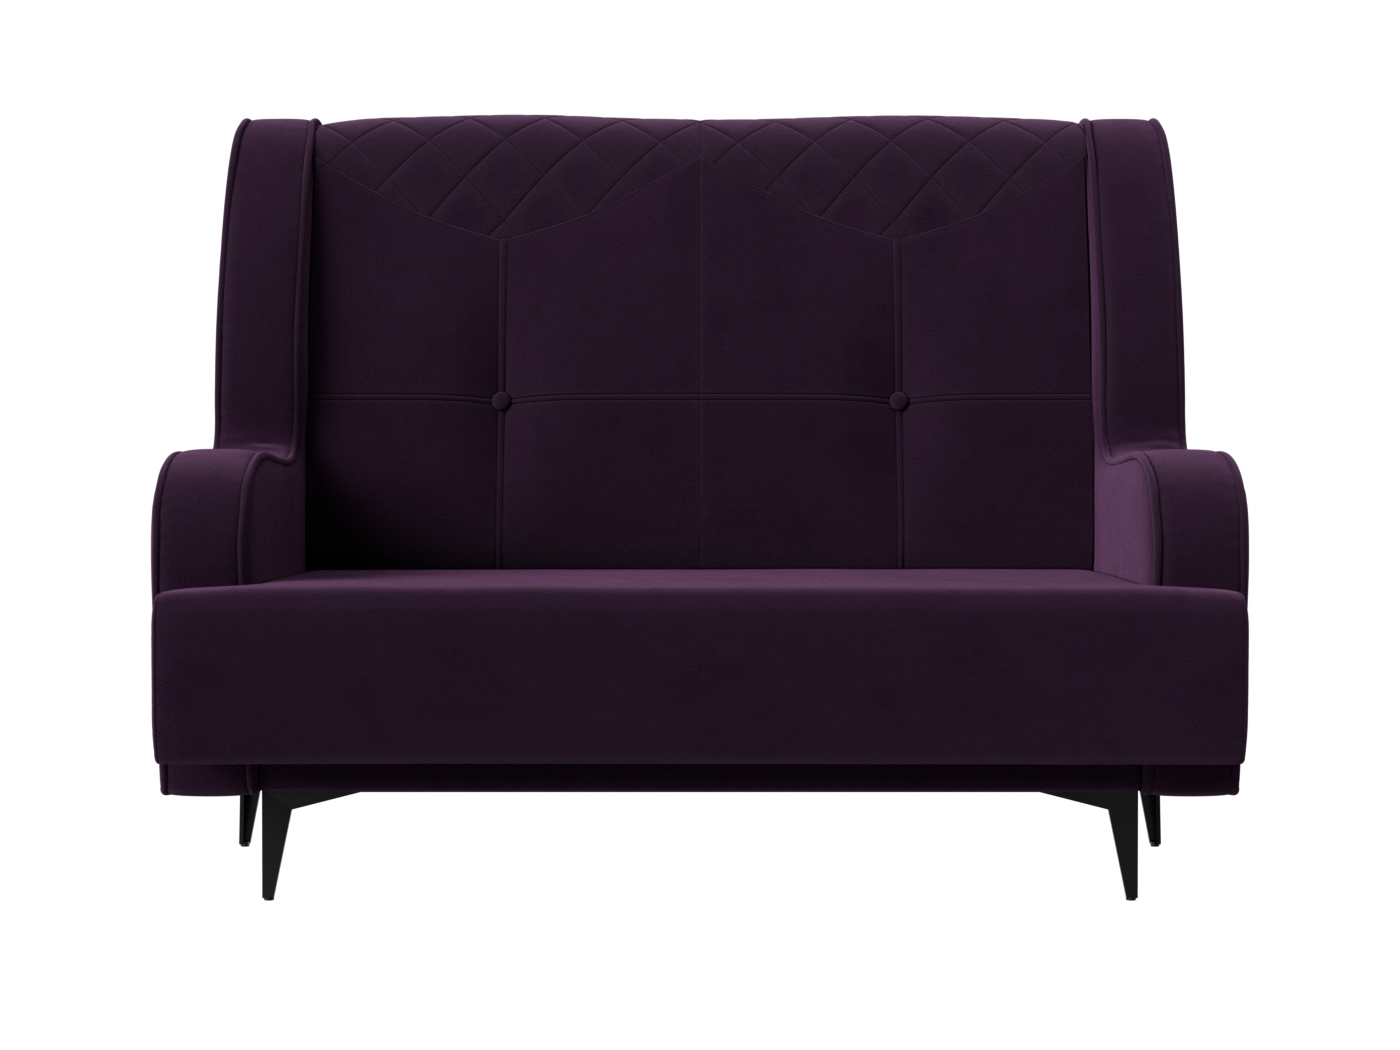 Прямой диван Неаполь 2-х местный (Фиолетовый)